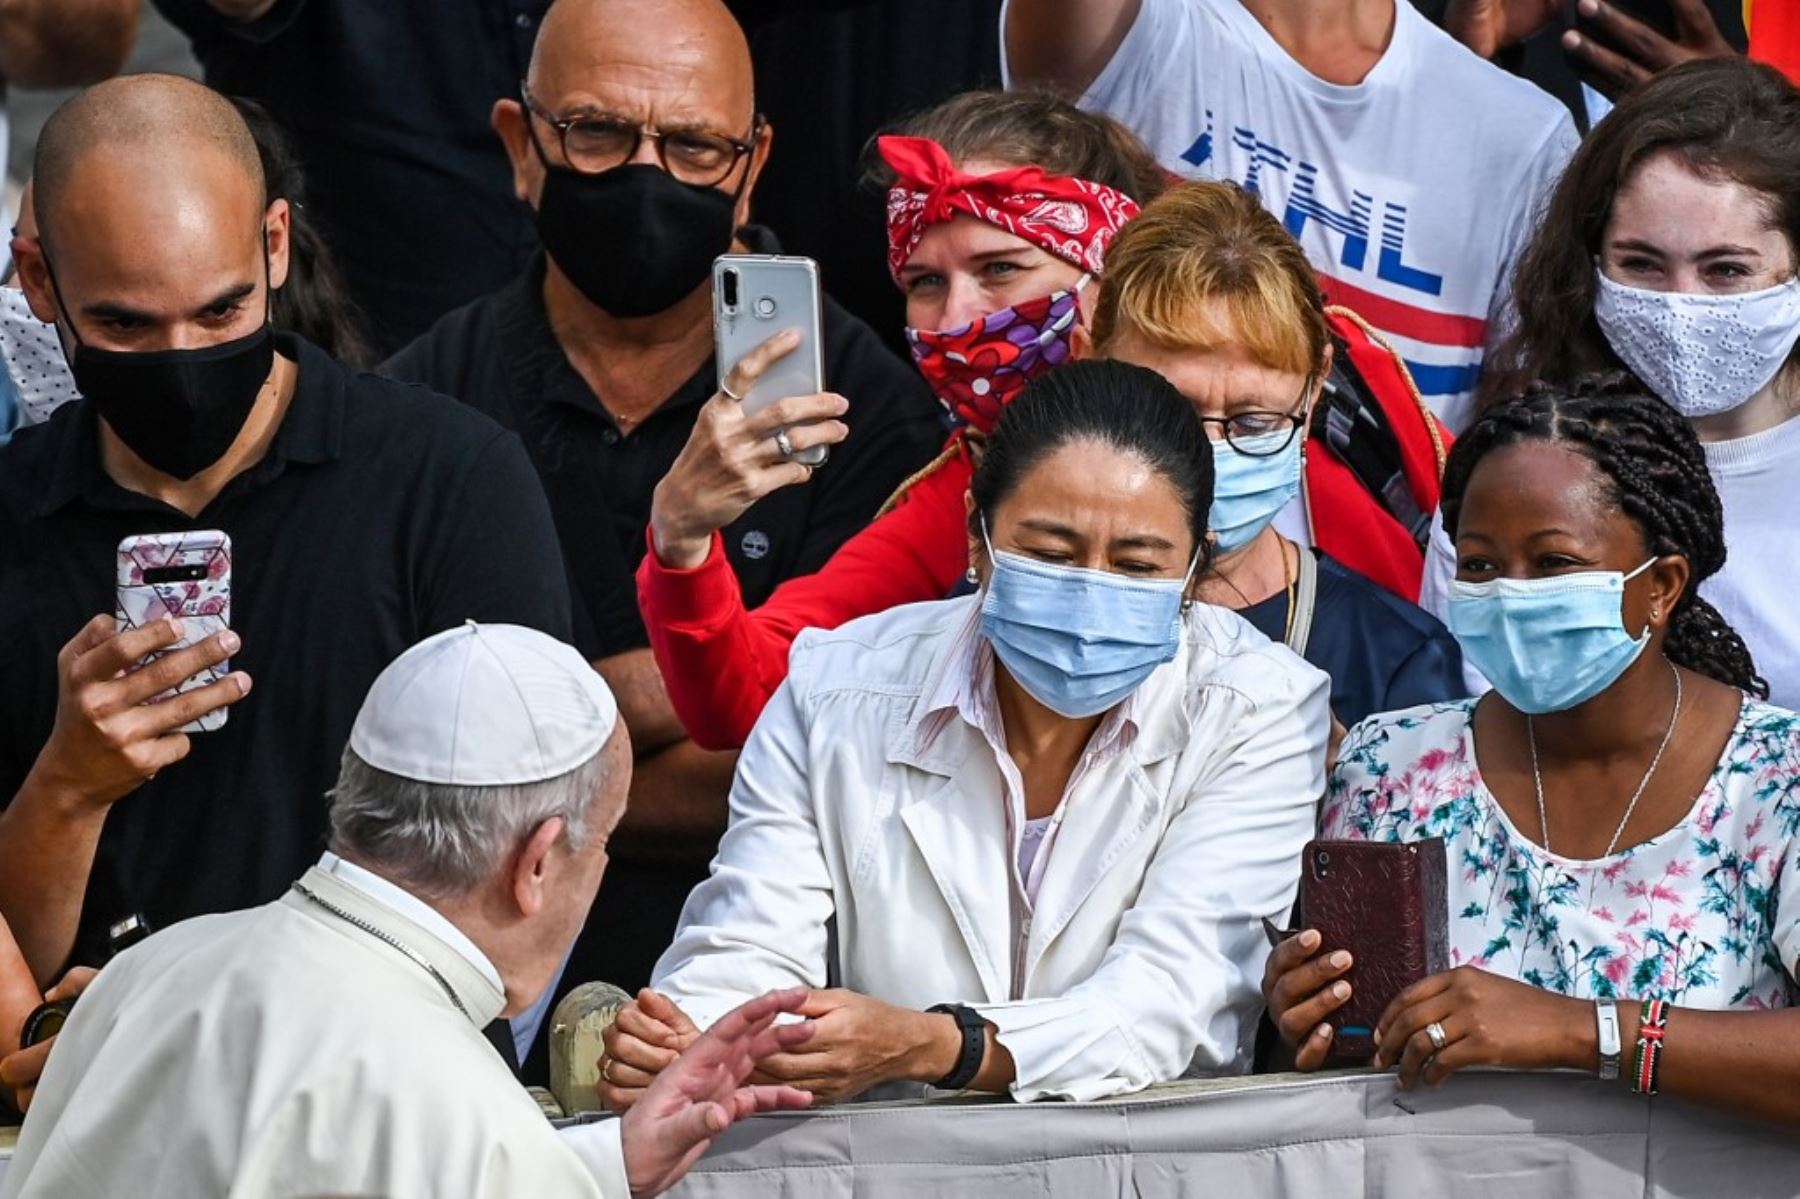 El Papa Francisco reanudará las audiencias públicas semanales limitadas, después de que el jefe de la Iglesia Católica detuviera la práctica debido a la pandemia de coronavirus. Foto:AFP.